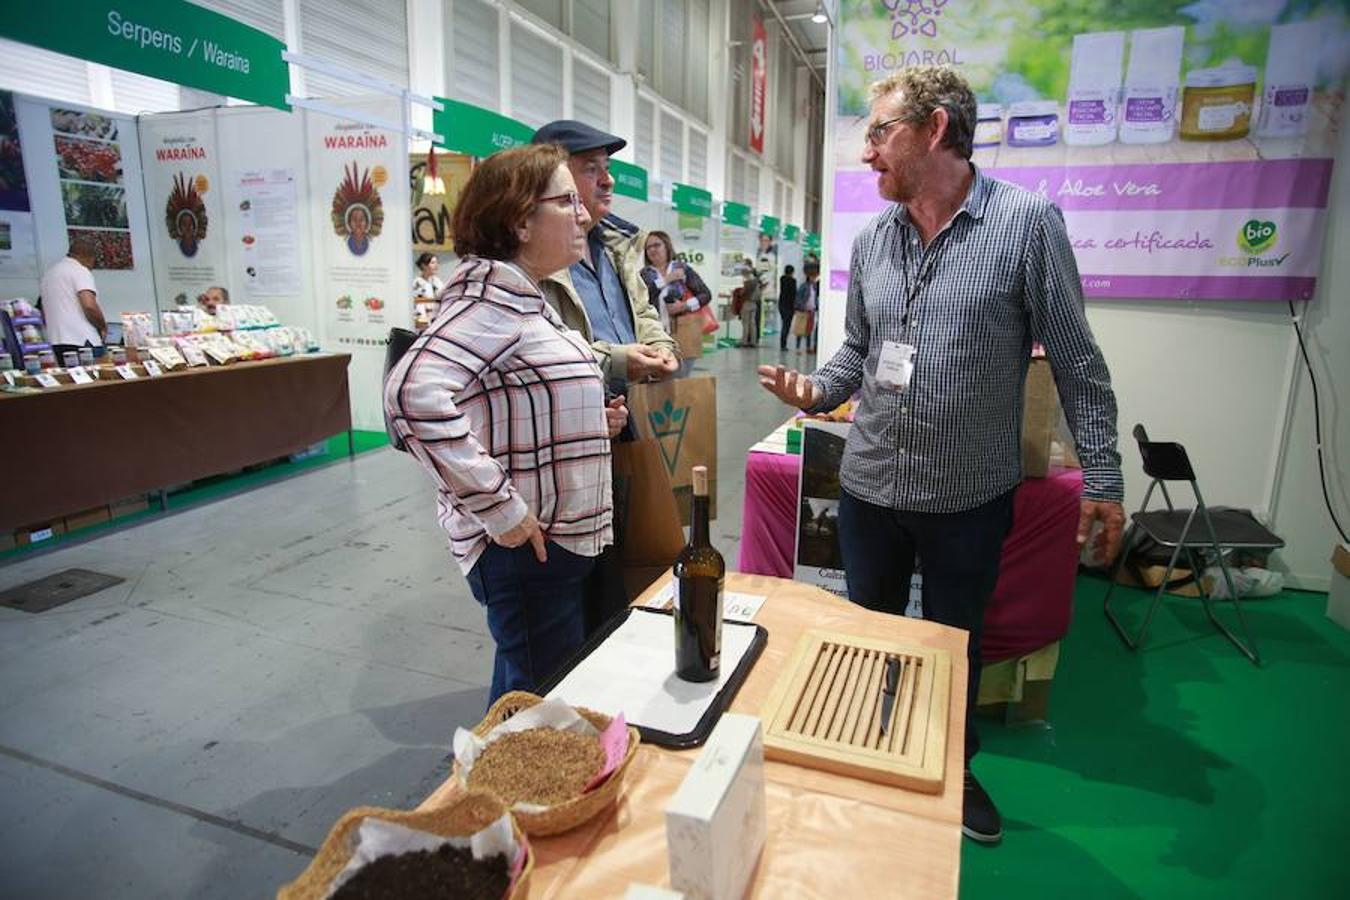 Este año Bioterra vuelve a acercar productos y servicios ecológicos y sostenibles. Su rigor, variedad y sus actividades complementarias hacen que este sea el evento de referencia en Euskadi. 